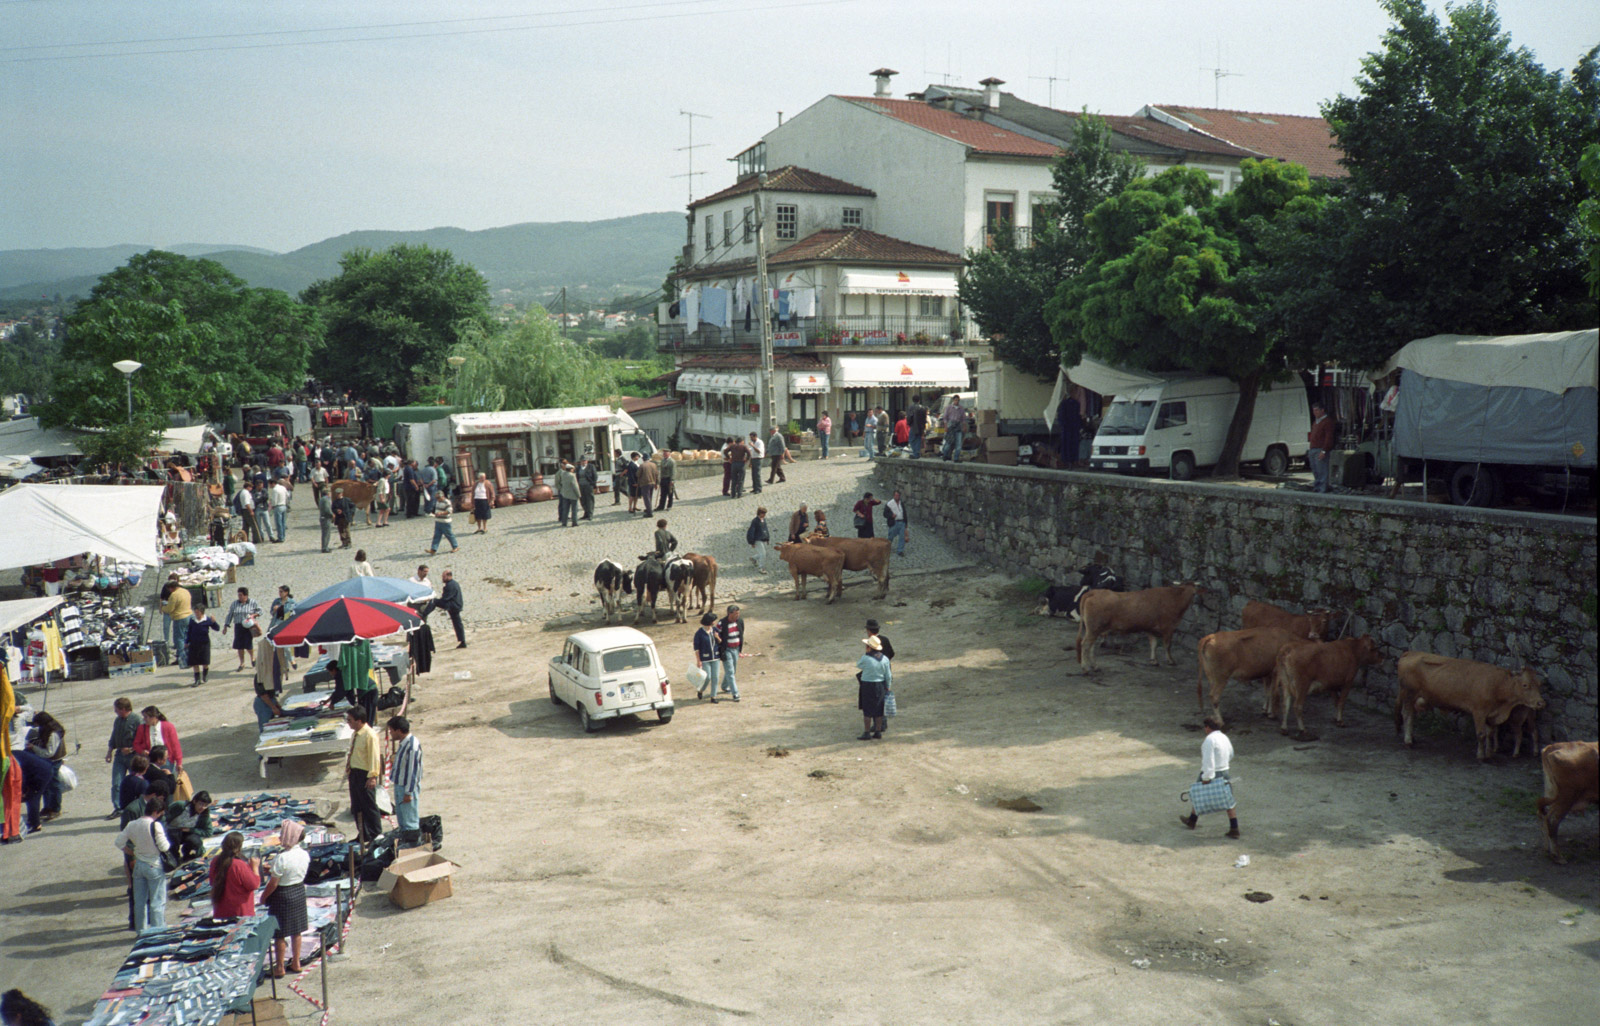 Ponte do Lima market